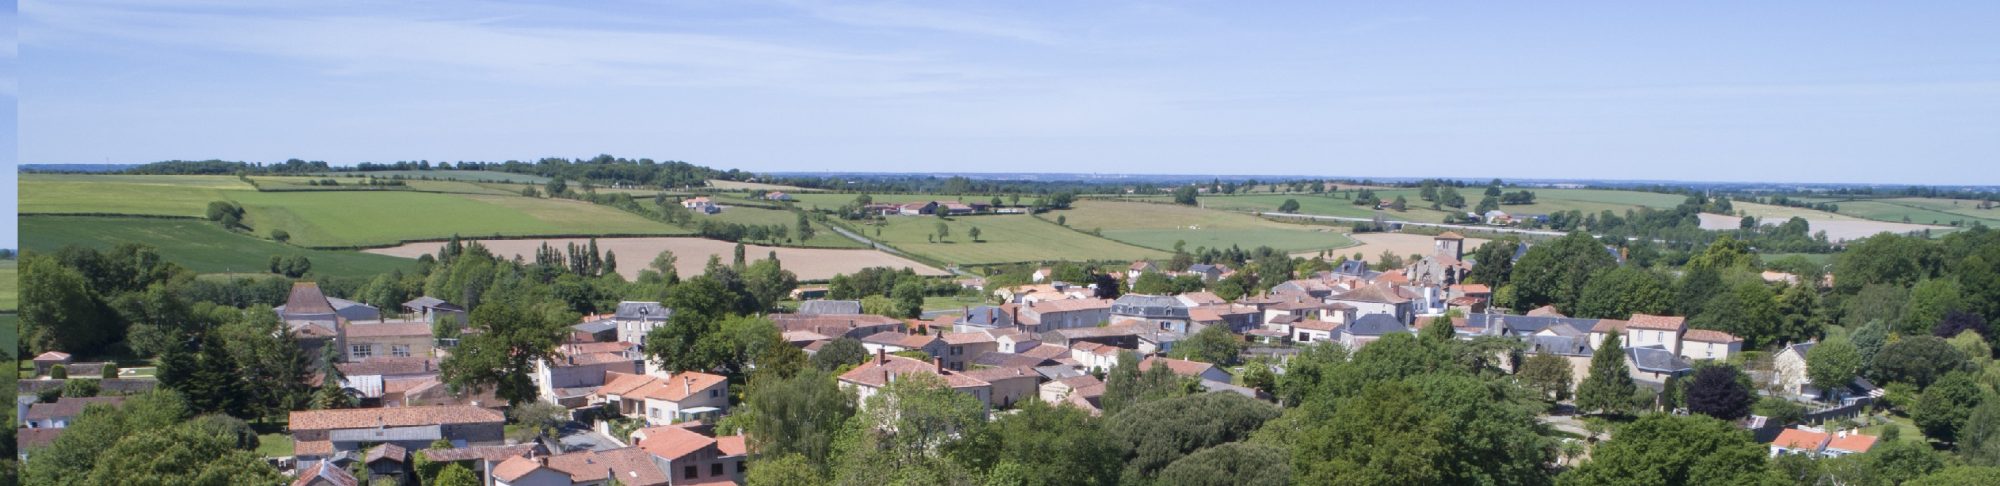 Coeur village